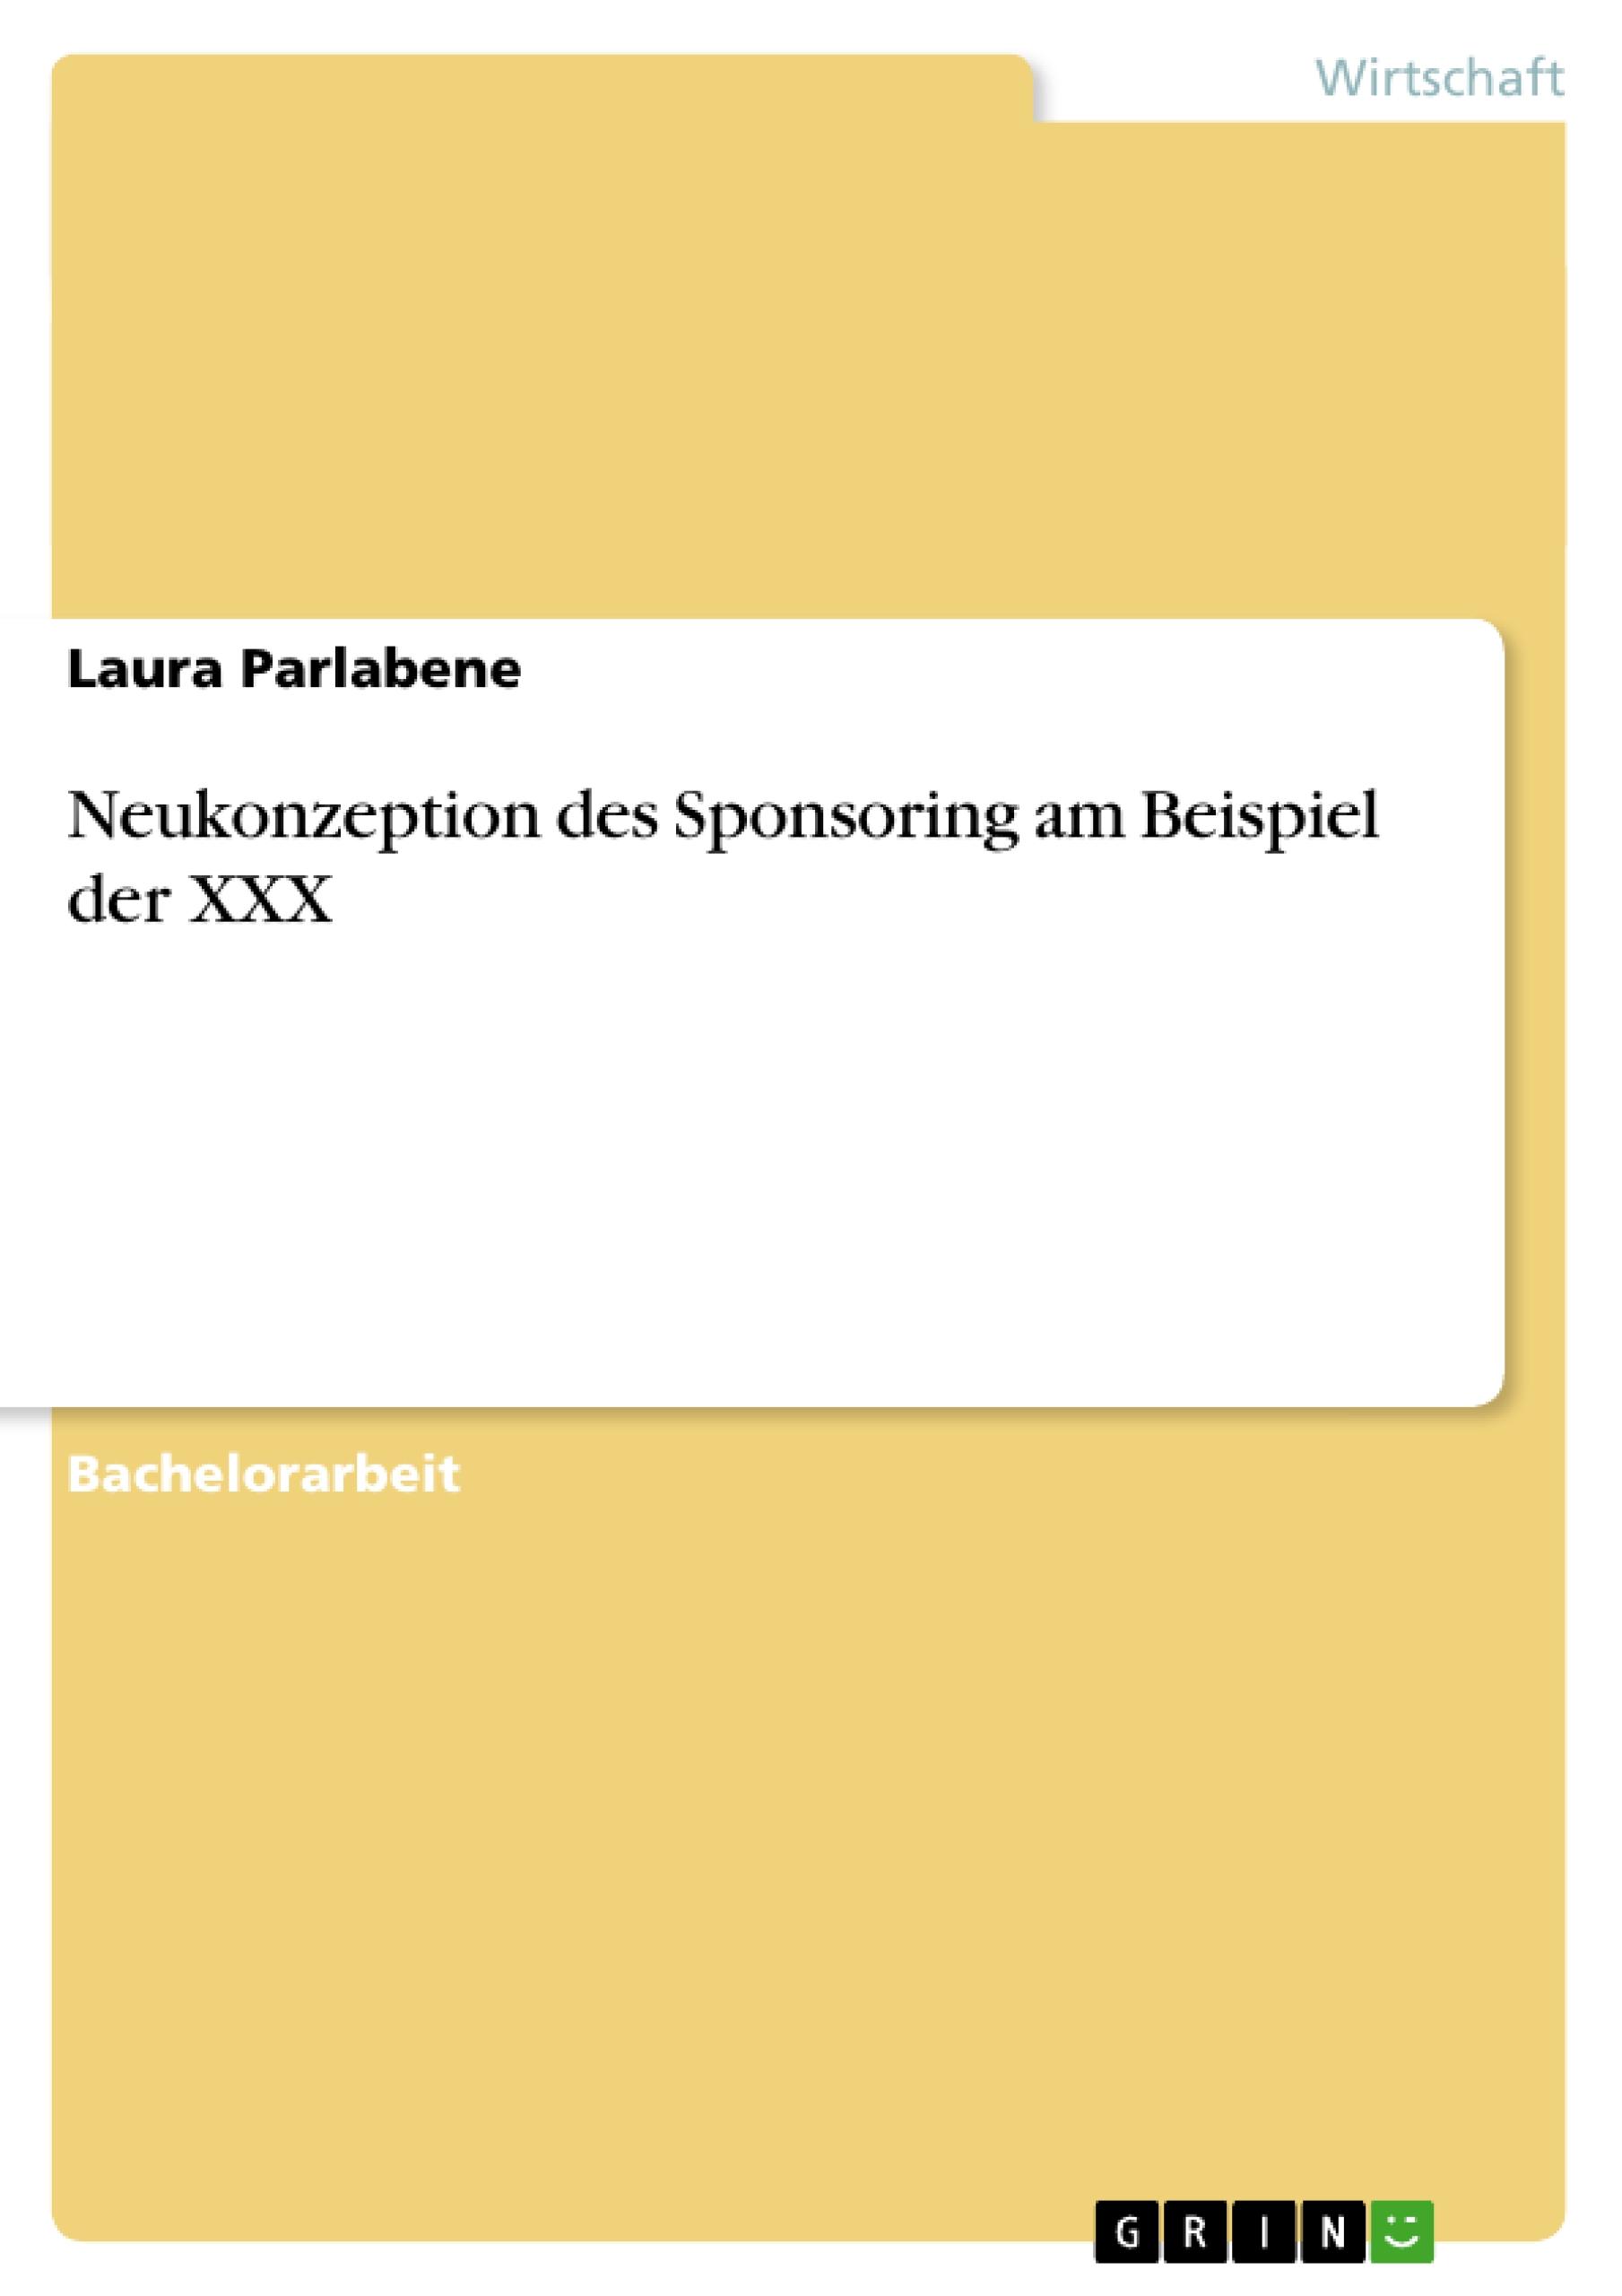 Neukonzeption des Sponsoring am Beispiel der XXX - Parlabene, Laura